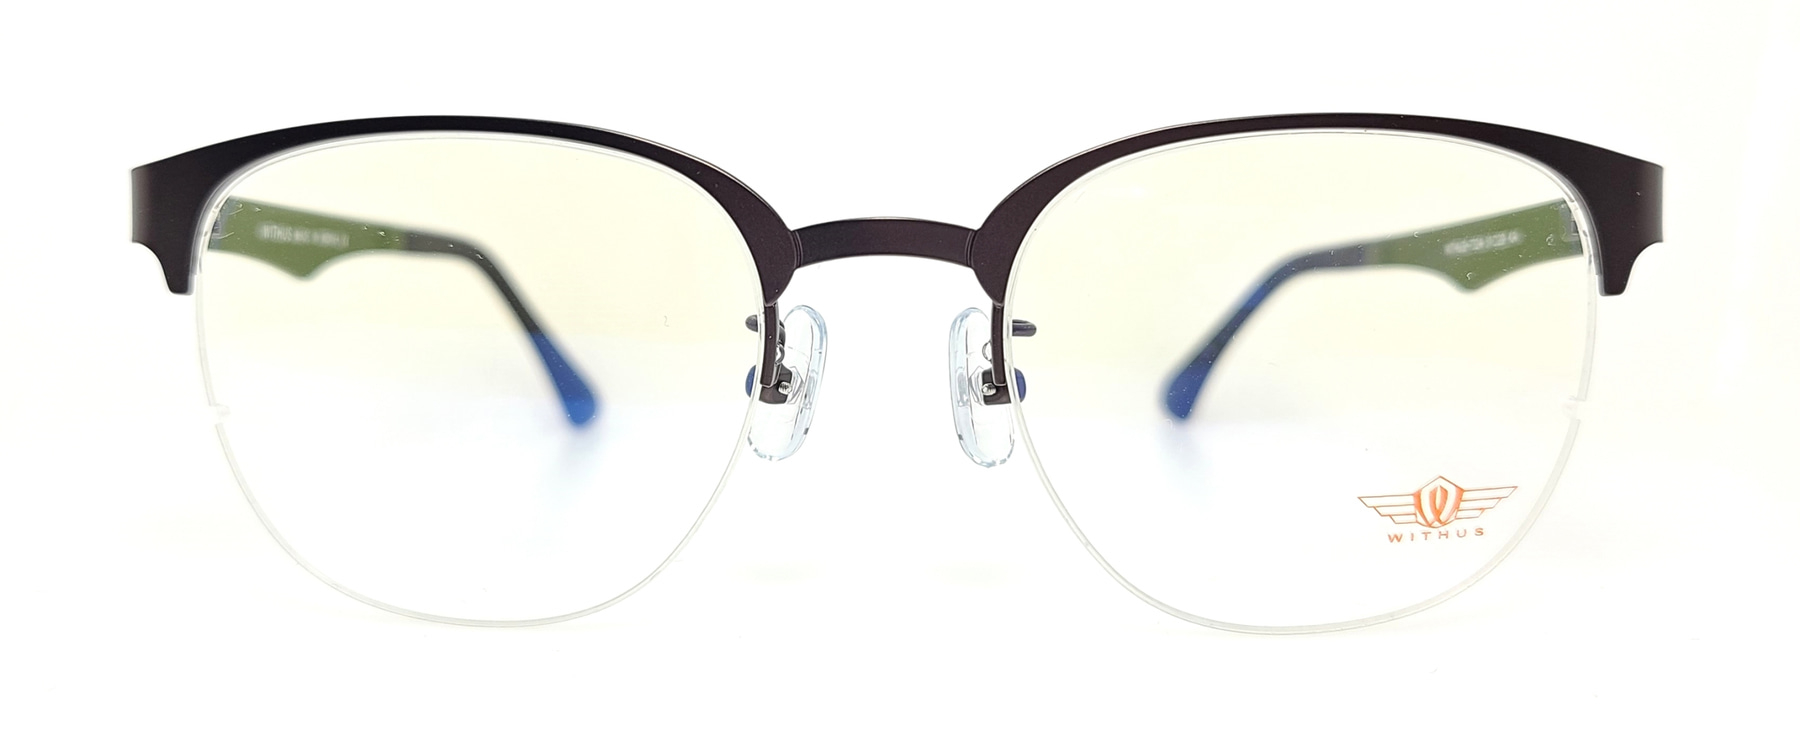 WITHUS-7324, Korean glasses, sunglasses, eyeglasses, glasses